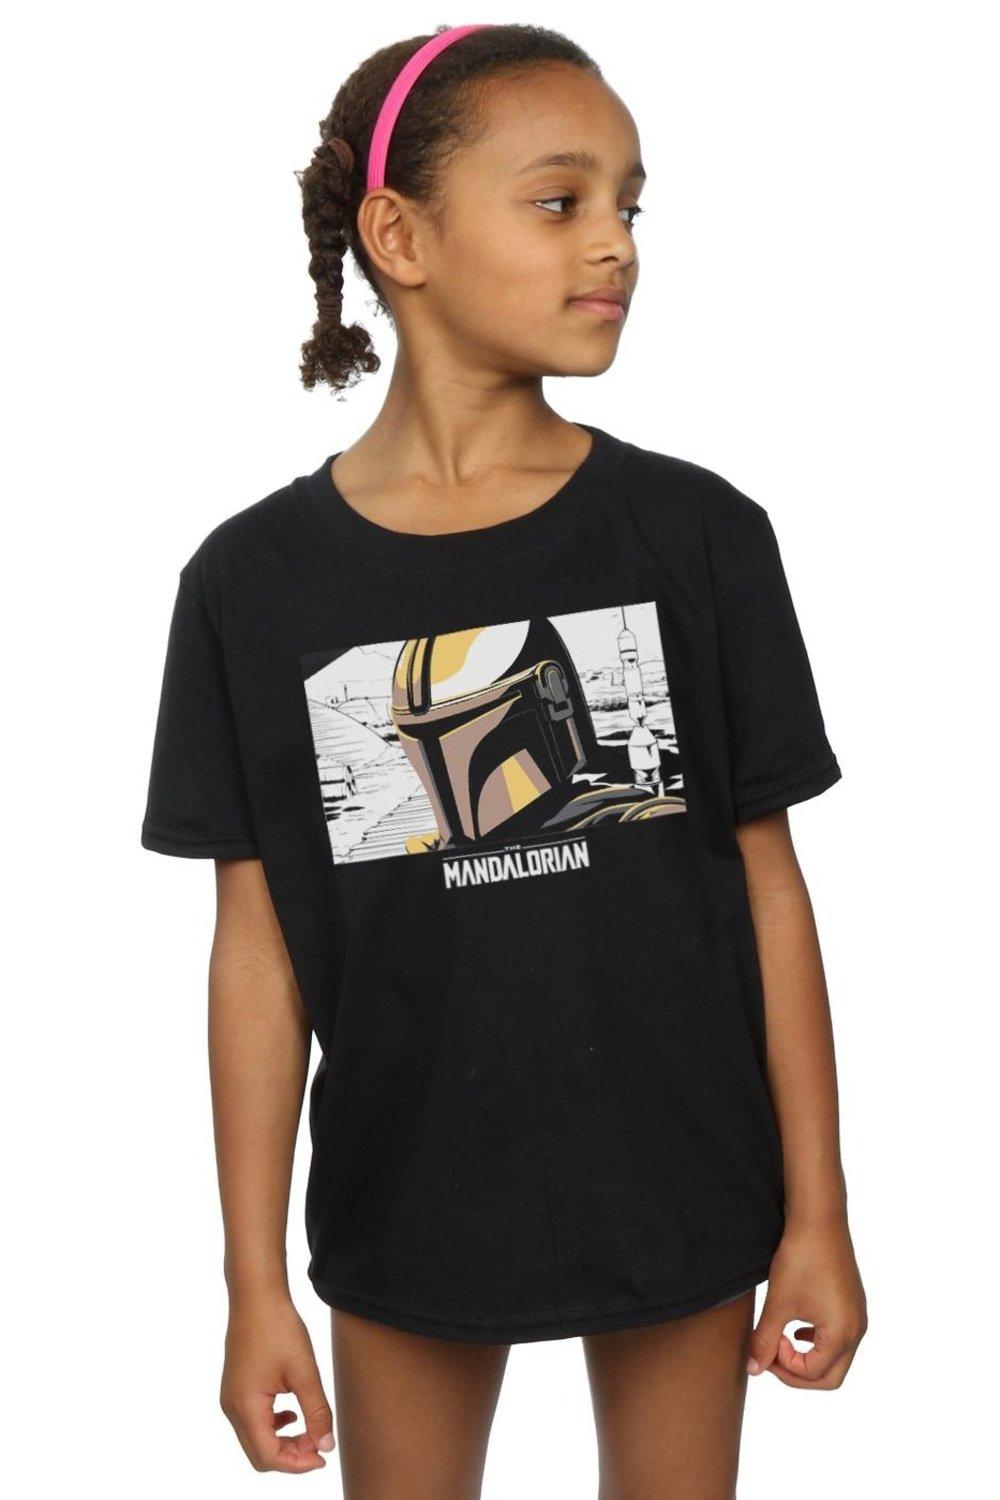 The Mandalorian Profile Frame Cotton T-Shirt